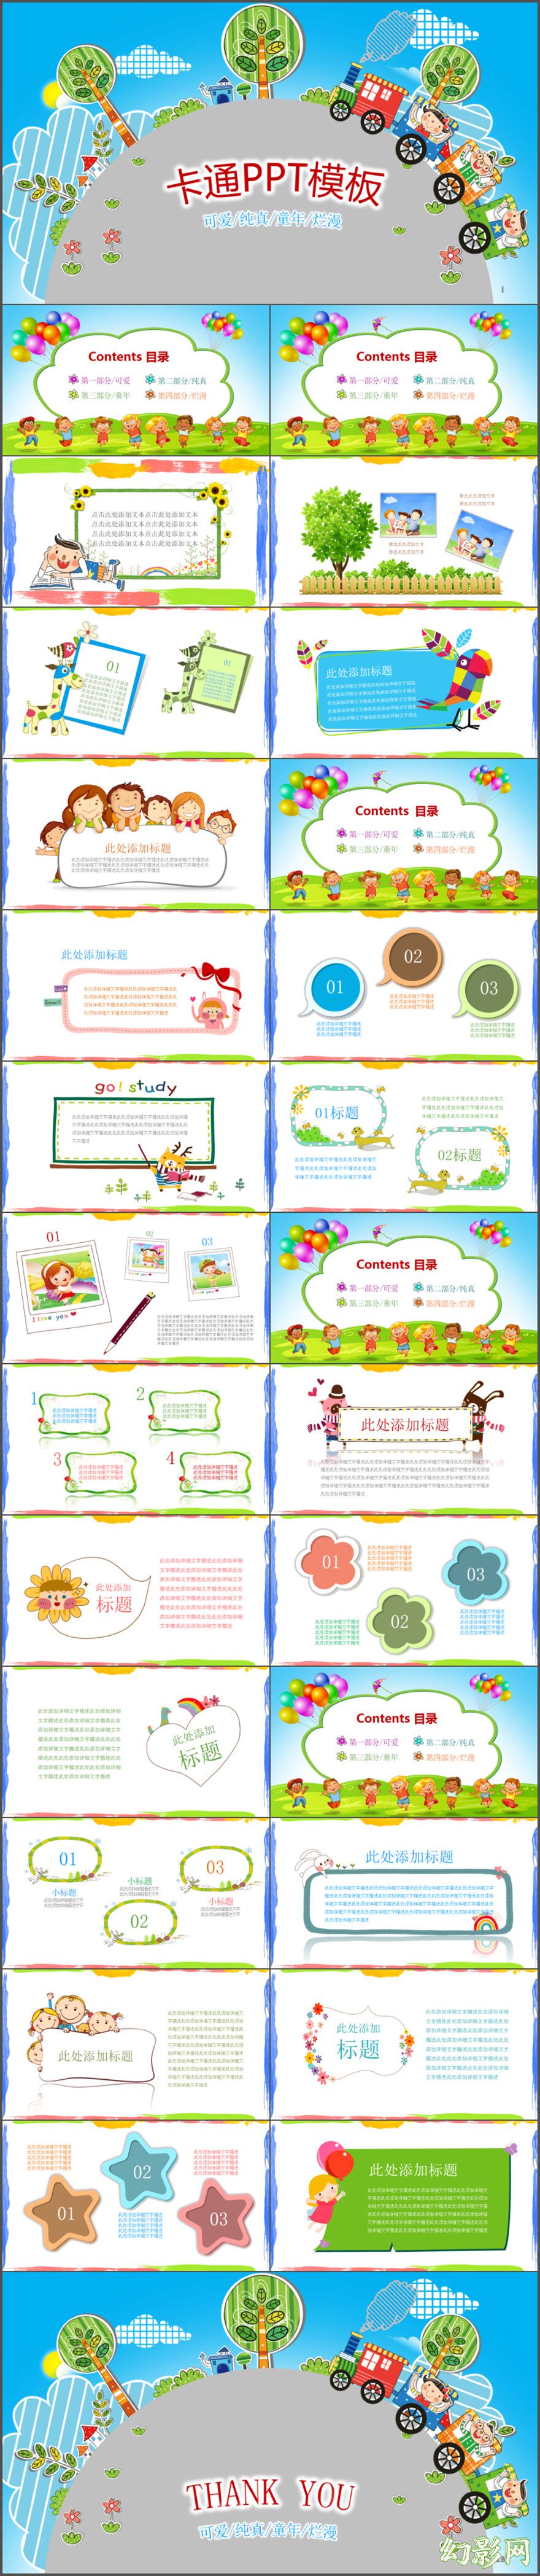 【超可爱动画】卡通幼儿园公开课优质课PPT动画模板